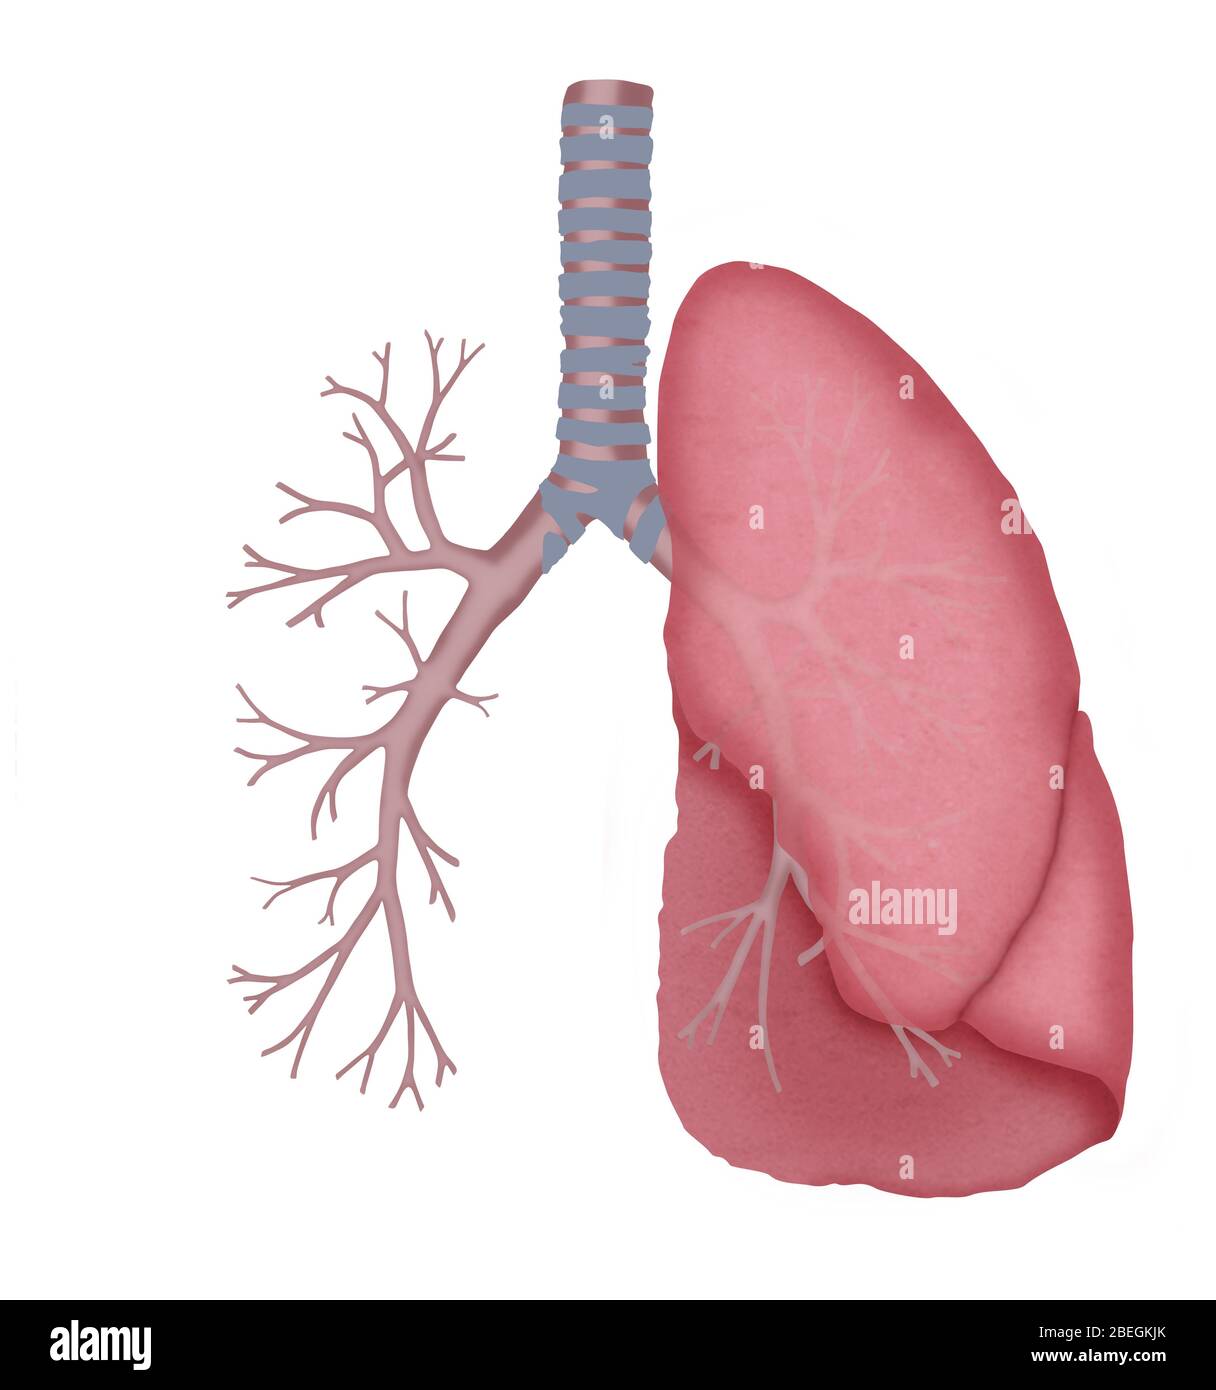 Tubos pulmonares y bronquiales normales Fotografía de stock - Alamy